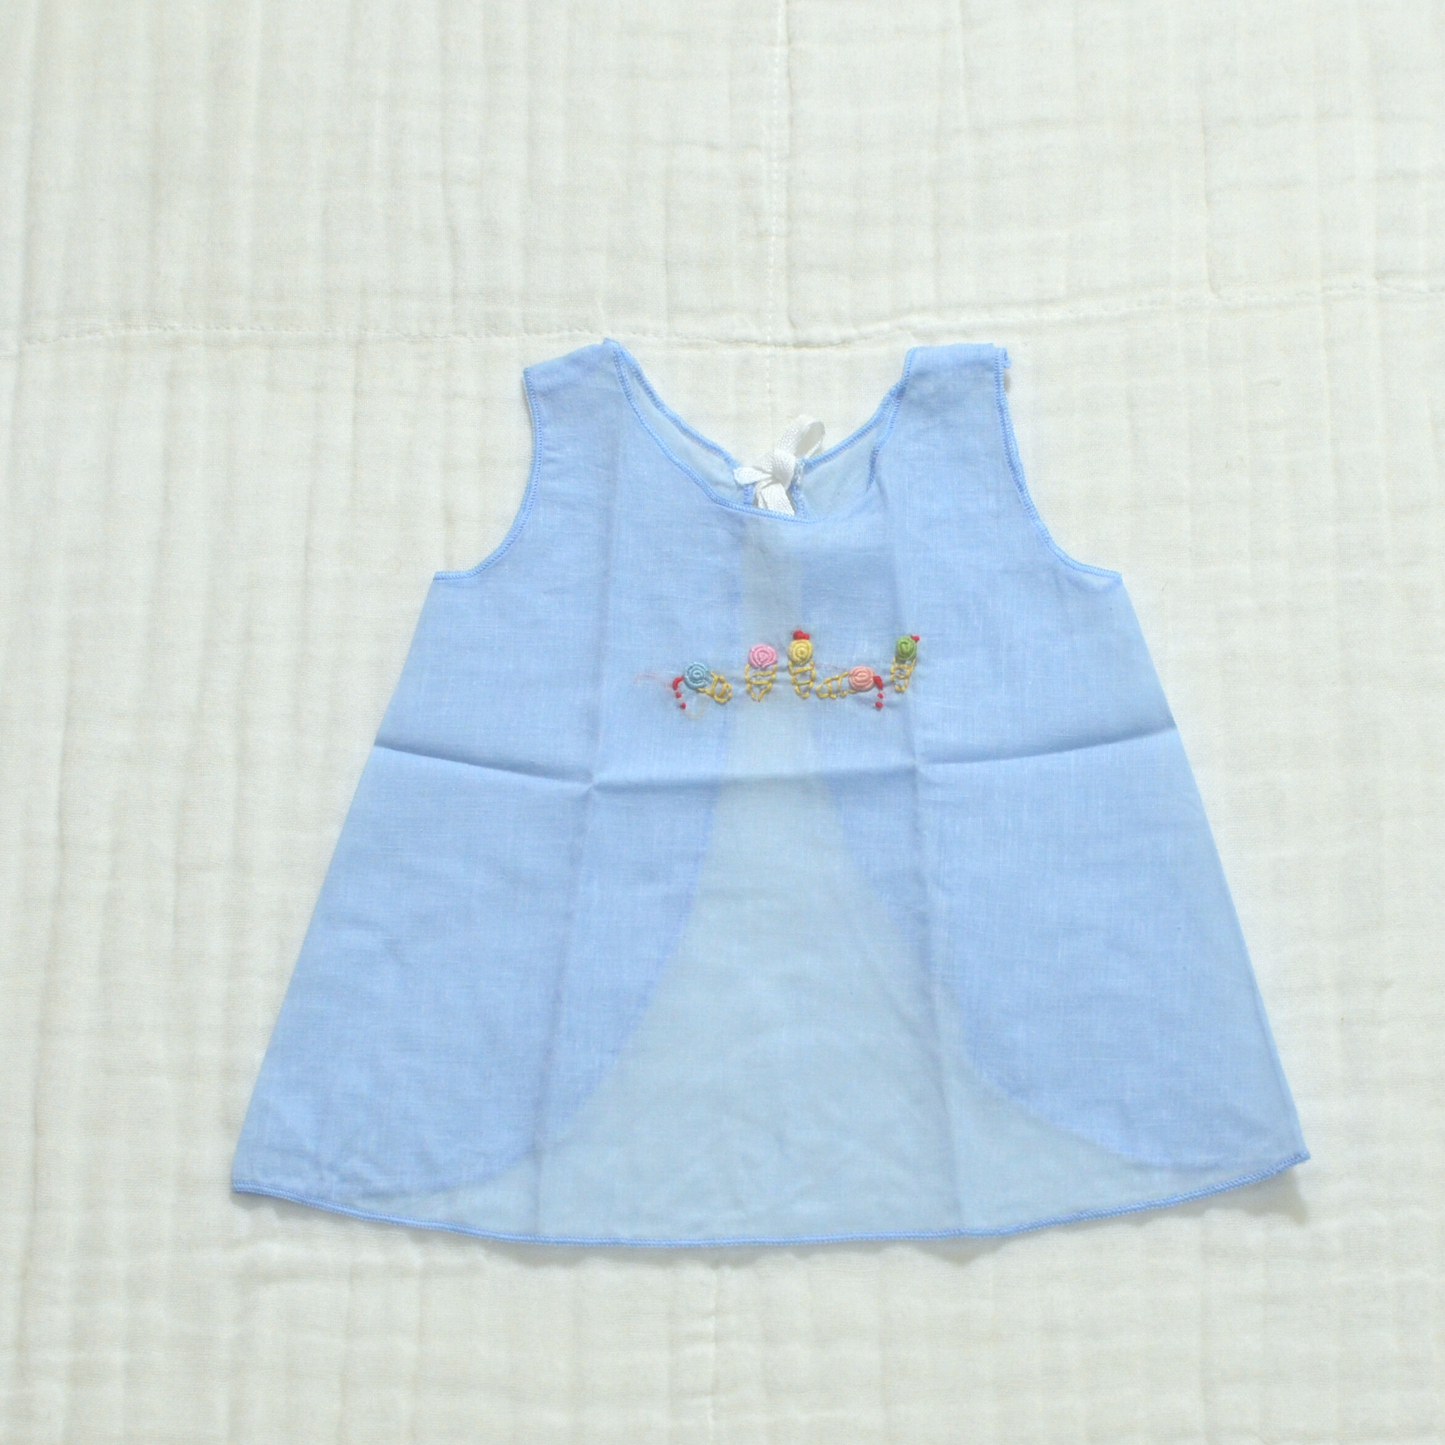 Handmade Newborn Dress Collection - Muslin V